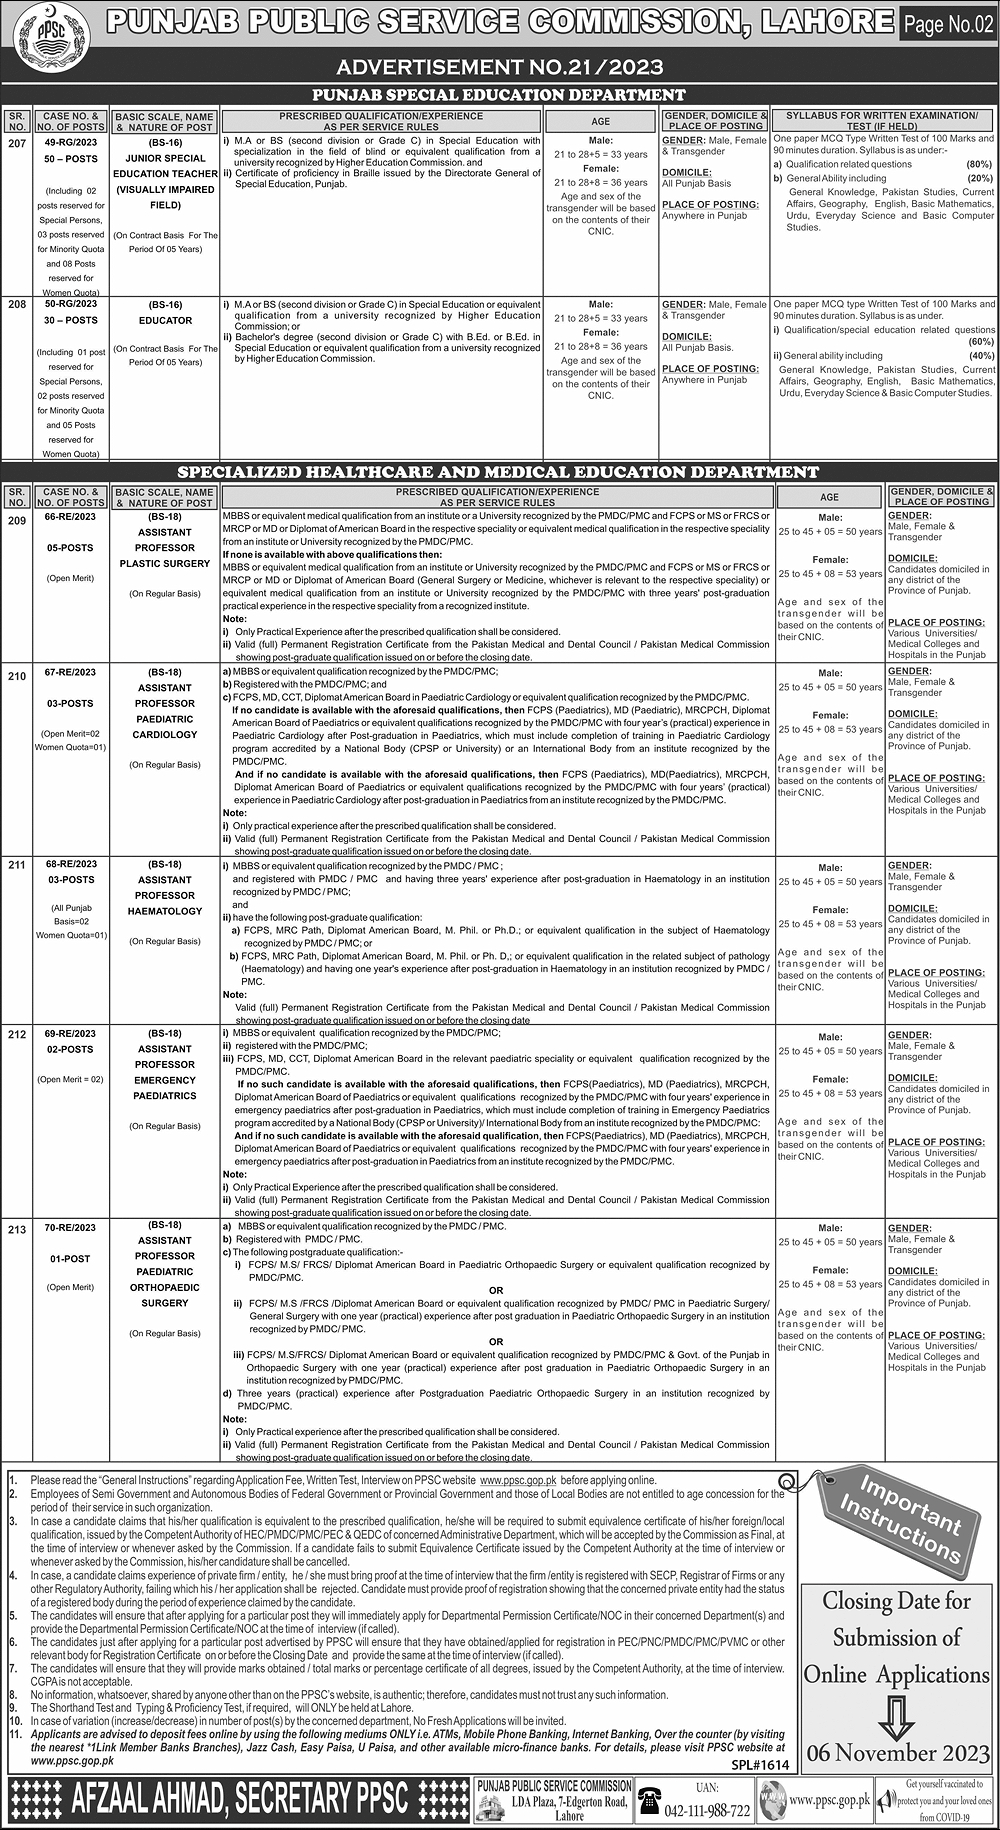 PPSC Punjab Public Service Commission Advertisement No. 21/2023 Jobs 2023 